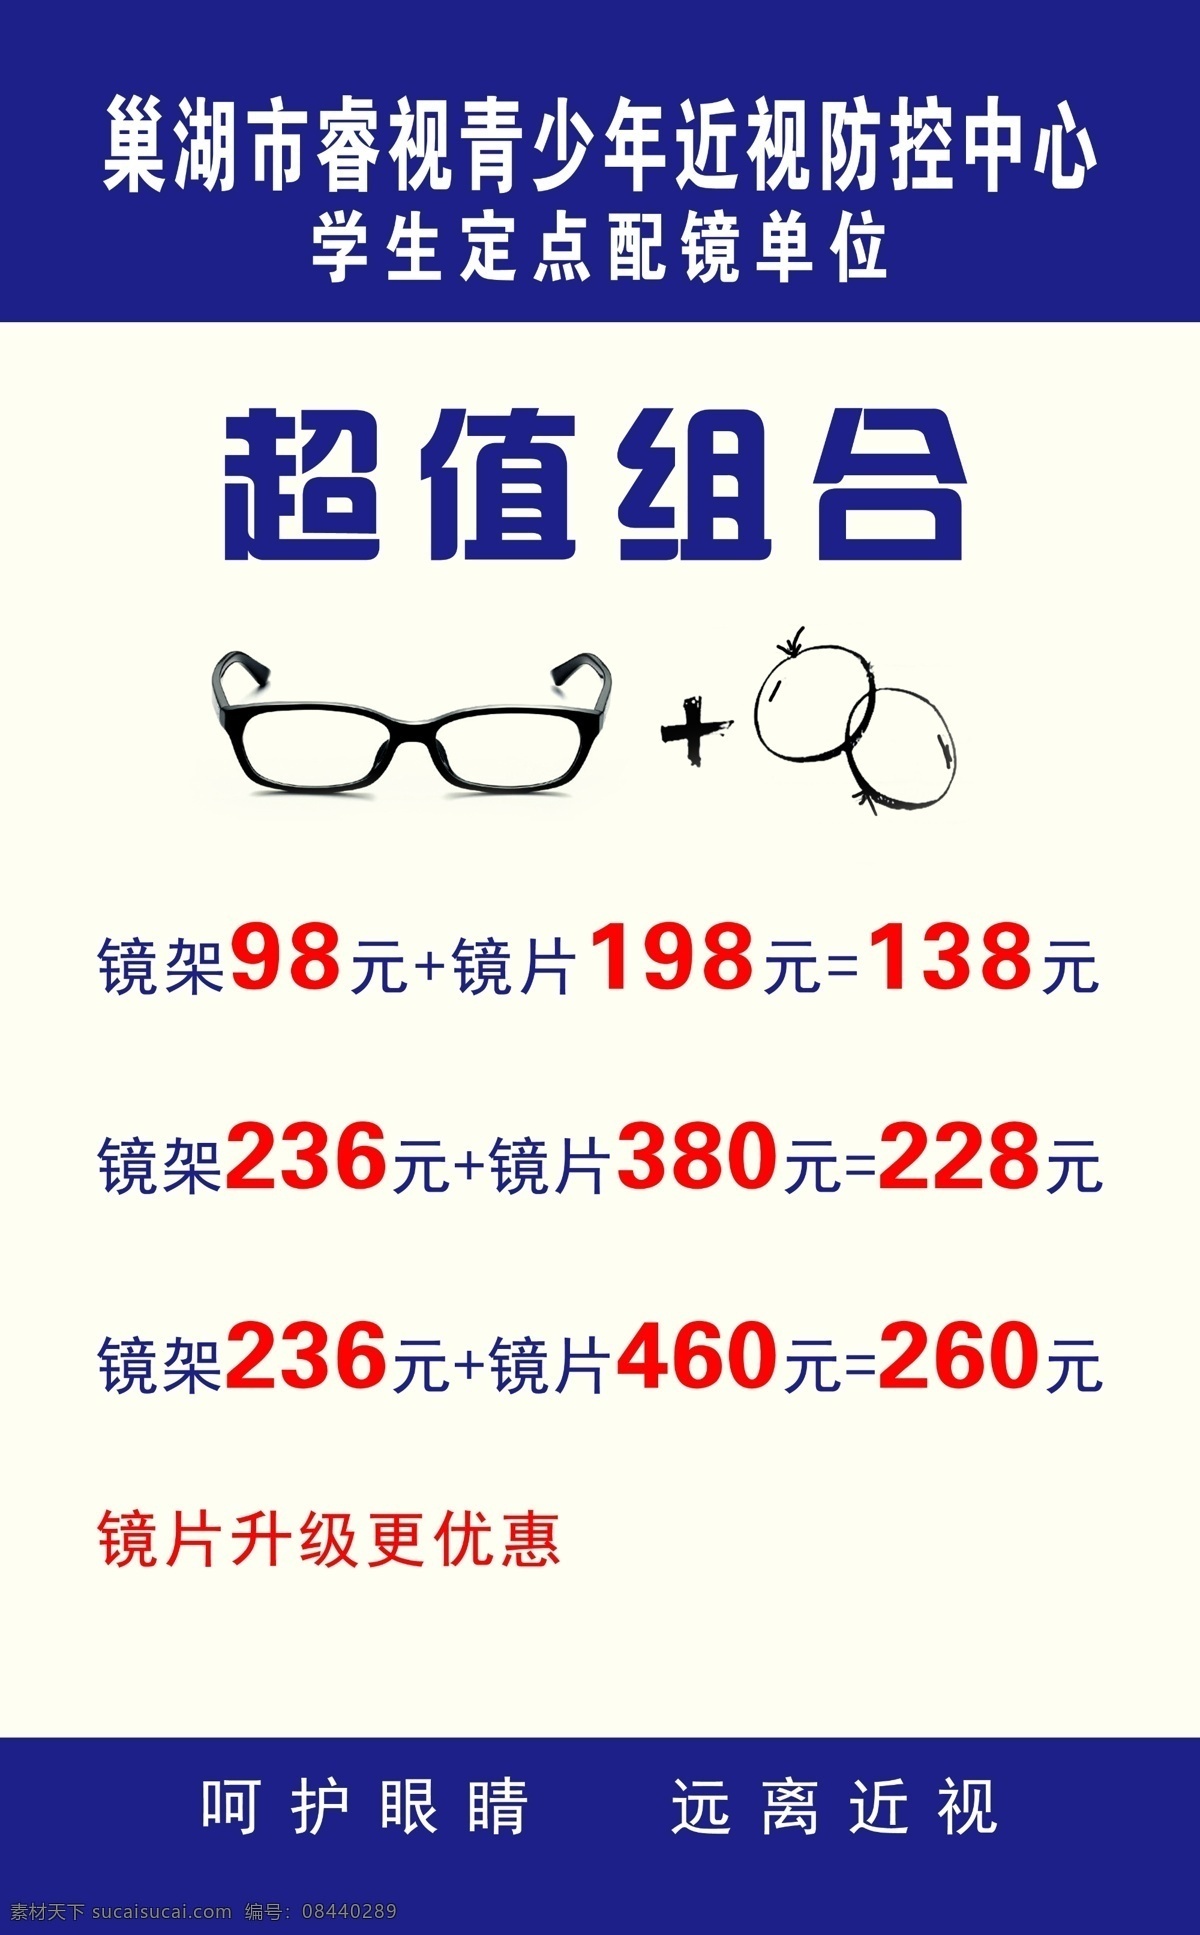 眼镜价格 眼镜 镜框 超值组合 呵护眼镜